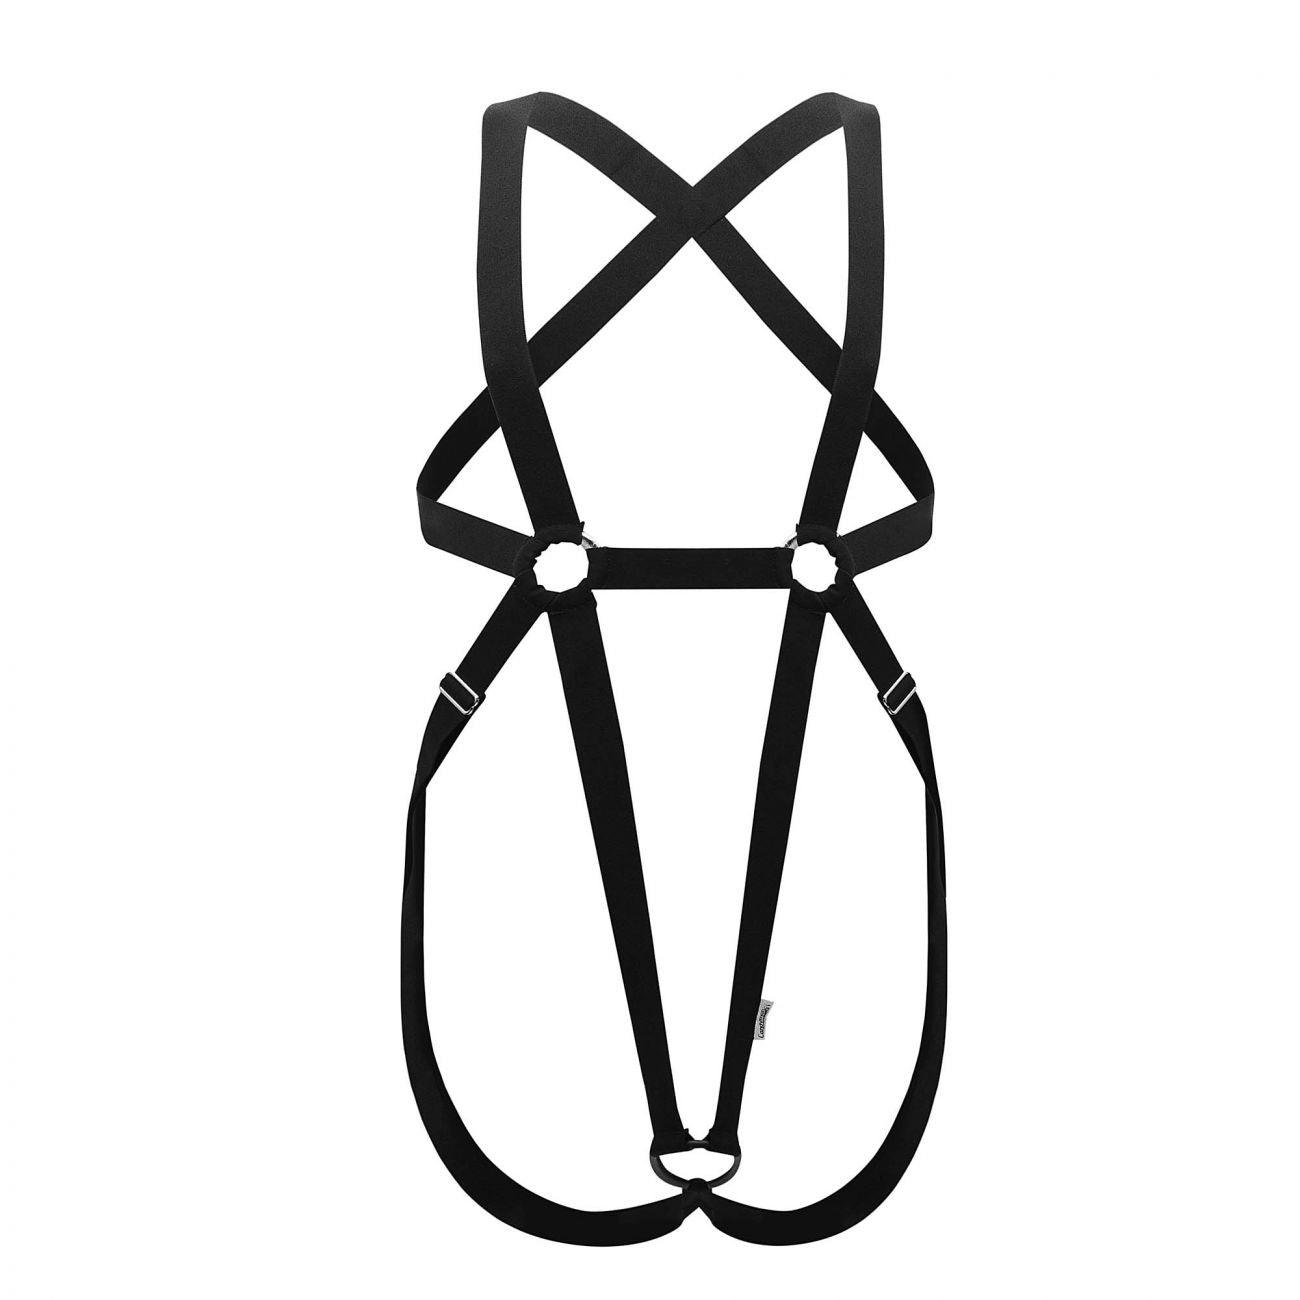 image of product,Protuder Bodysuit - SEXYEONE